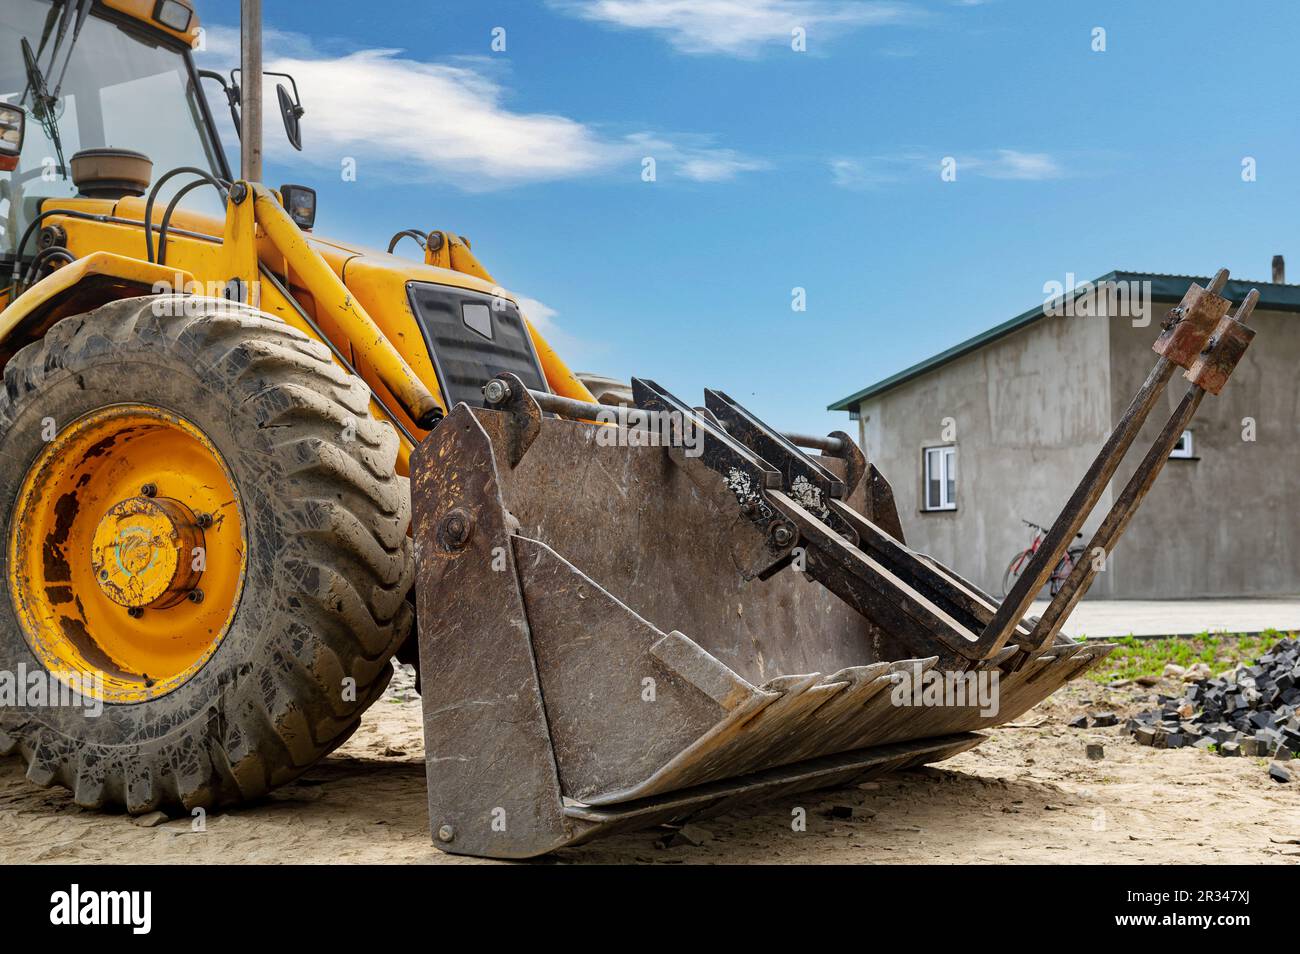 Detalles de tractor rojo moderno cerca. Grande brillante amarillo potente industrial excavadora pesada tractor, bulldozer. Foto de stock